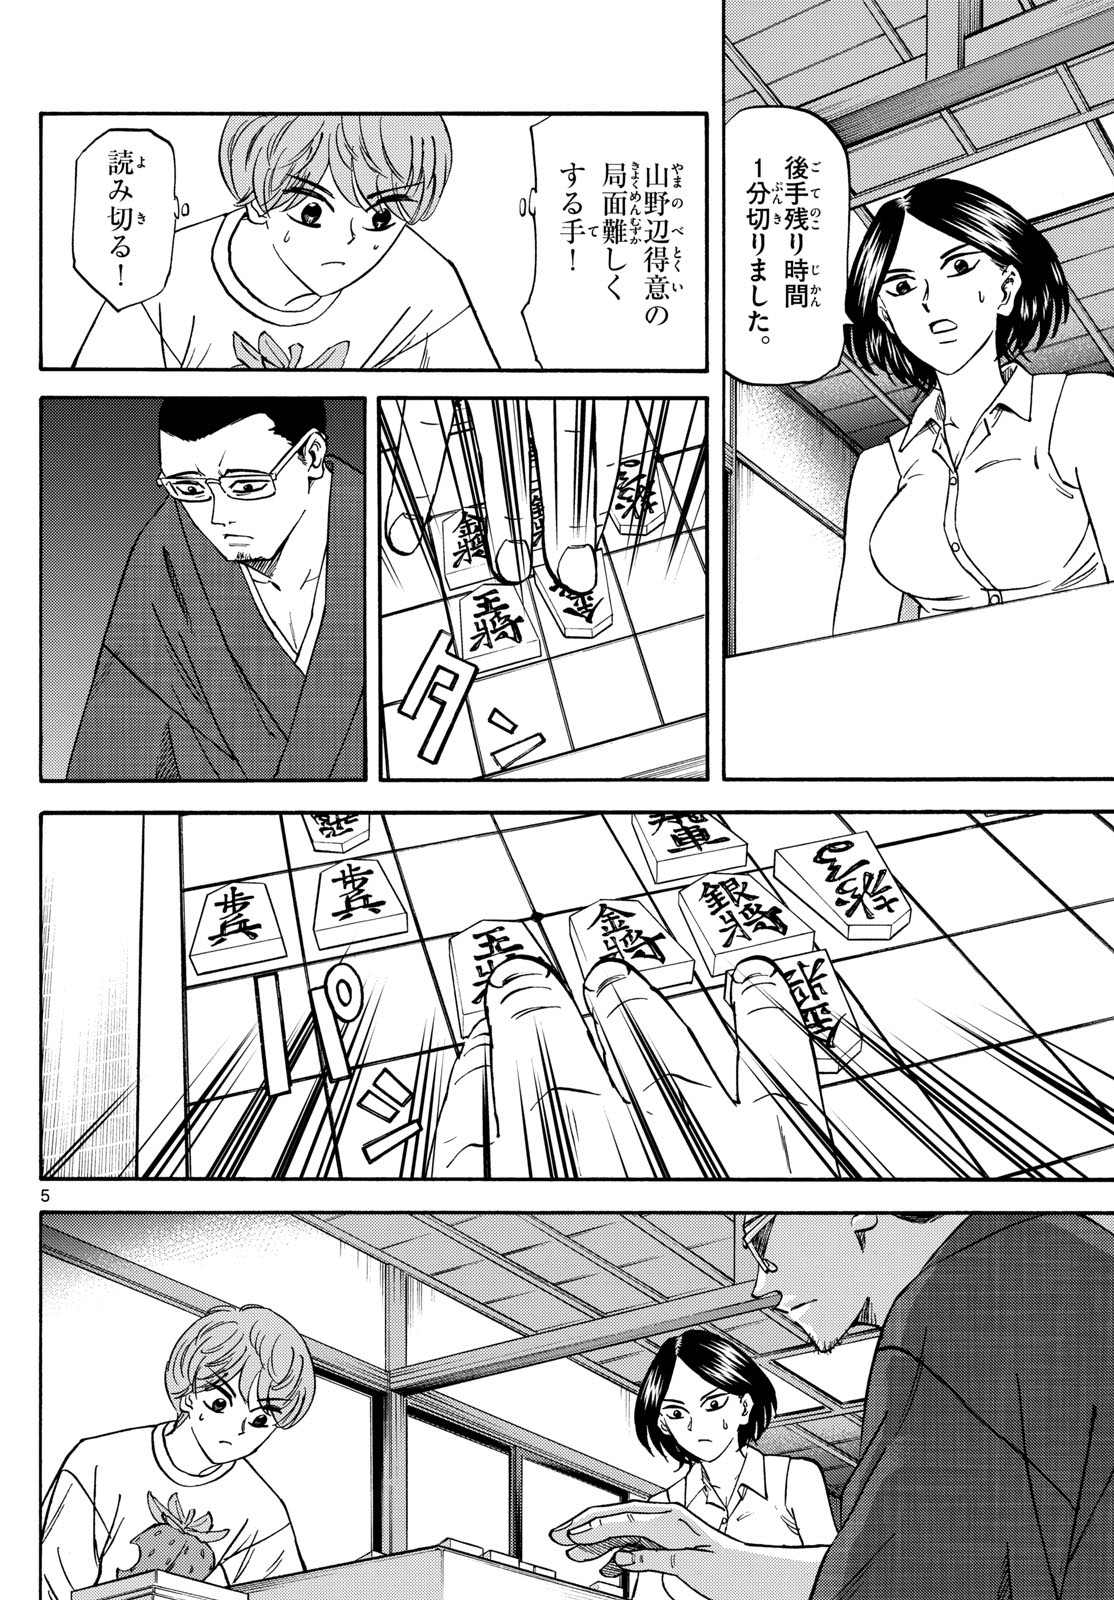 Tatsu to Ichigo - Chapter 170 - Page 5